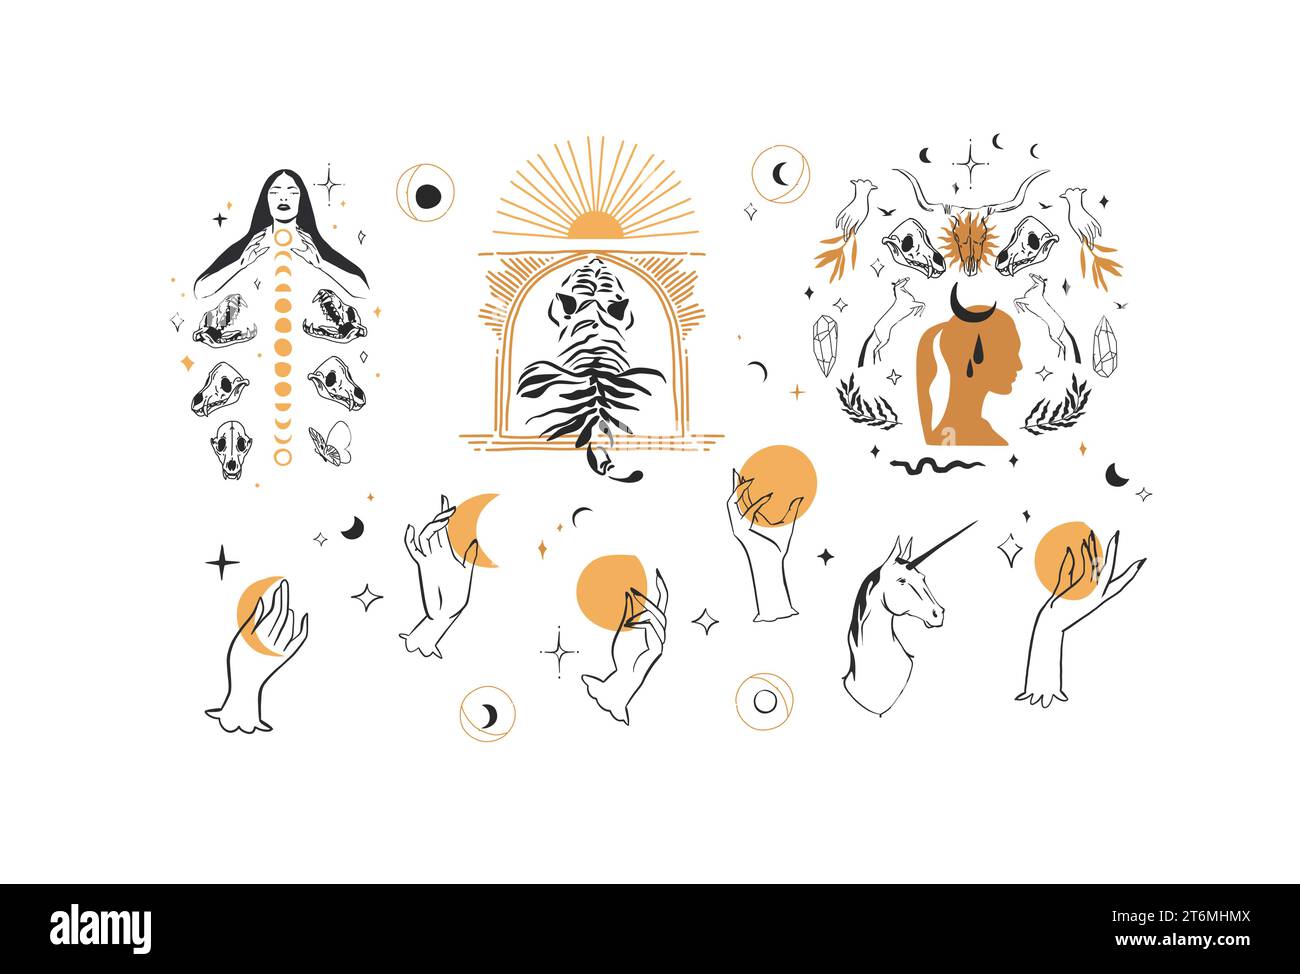 Ensemble de collection d'éléments d'illustration de ligne graphique abstraite de vecteur dessiné à la main, croissant magique, papillon, fleurs, animaux, lune et mains humaines isolées Illustration de Vecteur